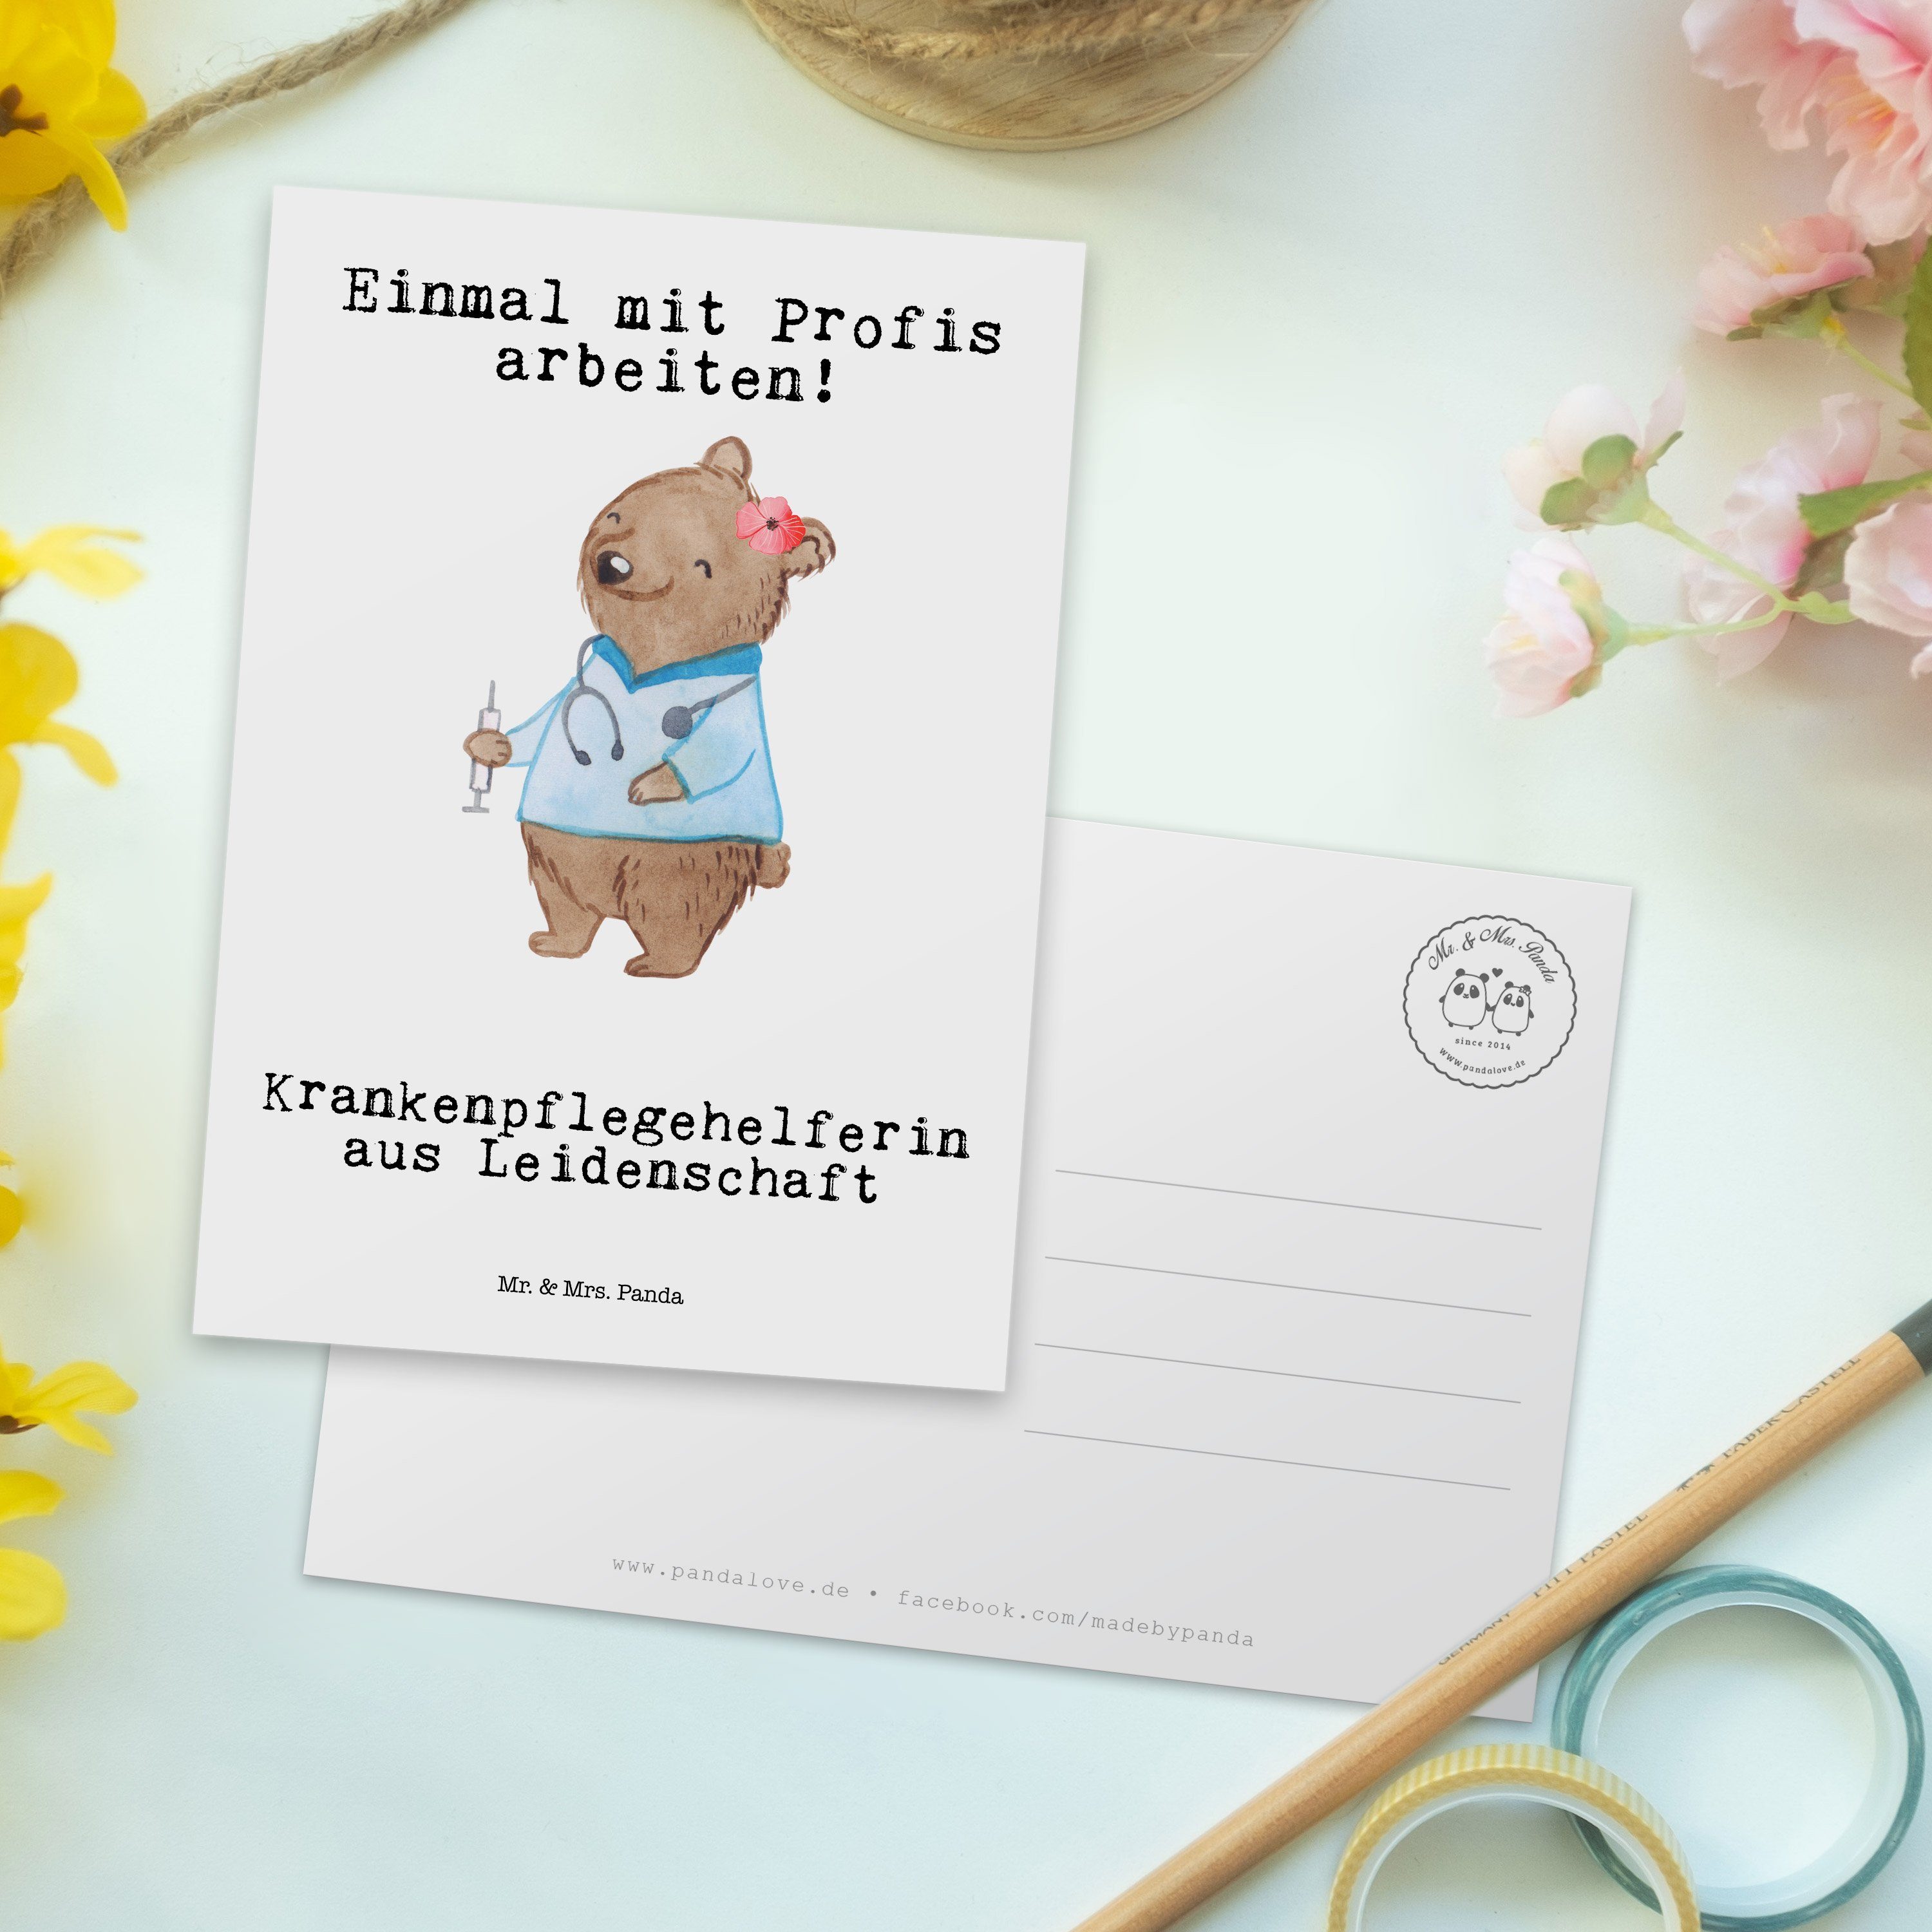 Mr. & Mrs. Panda Ausbildung aus Geschenk, Weiß - Postkarte - Krankenpflegehelferin Leidenschaft